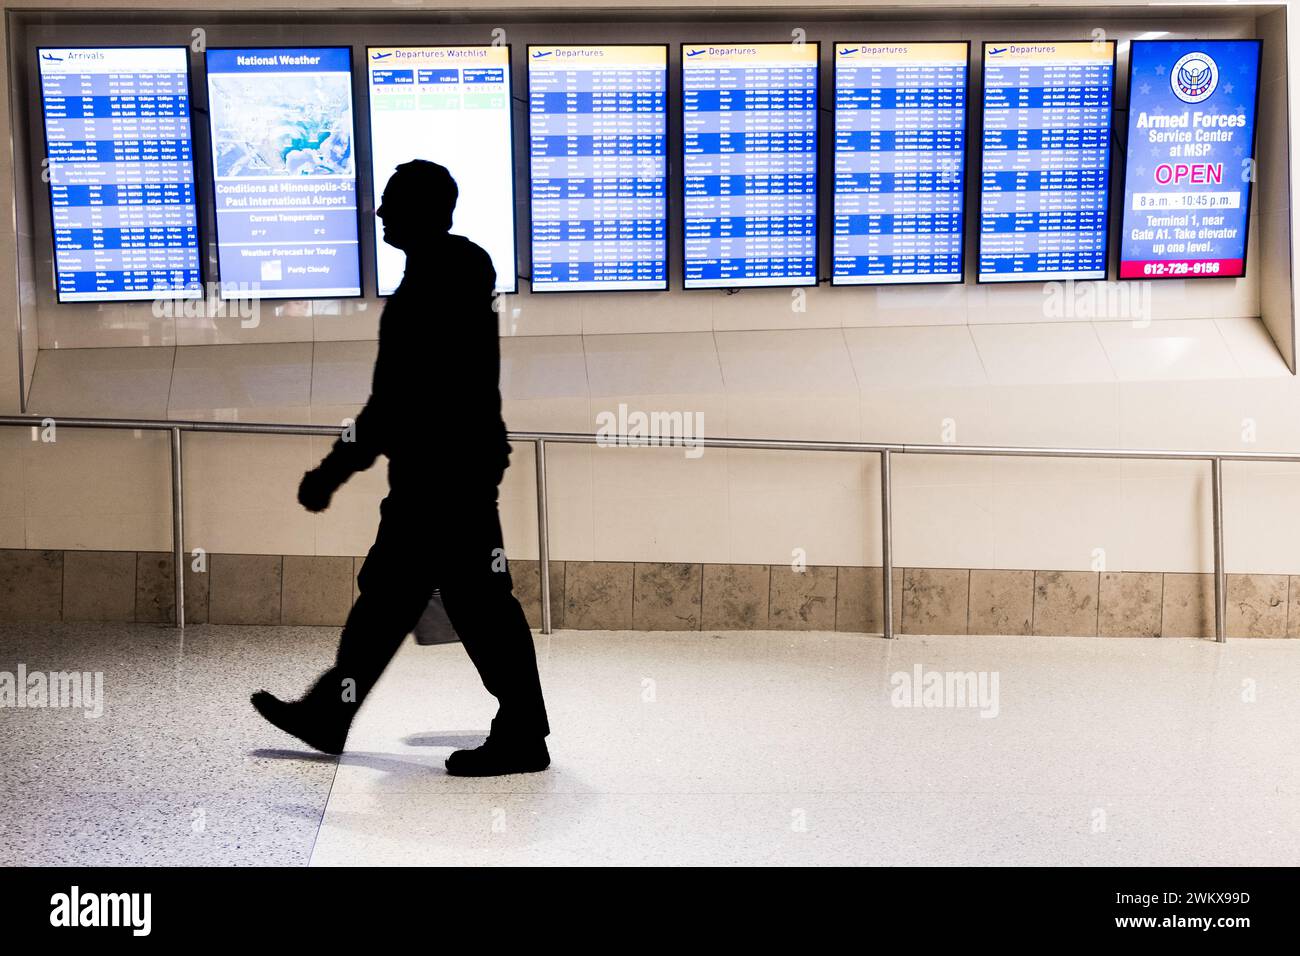 Voyageur aérien et affichage arrivée-départ au Minneapolis-équipé Paul Airport, États-Unis (MSP) lors d'une journée typique de voyage à l'aéroport. Banque D'Images